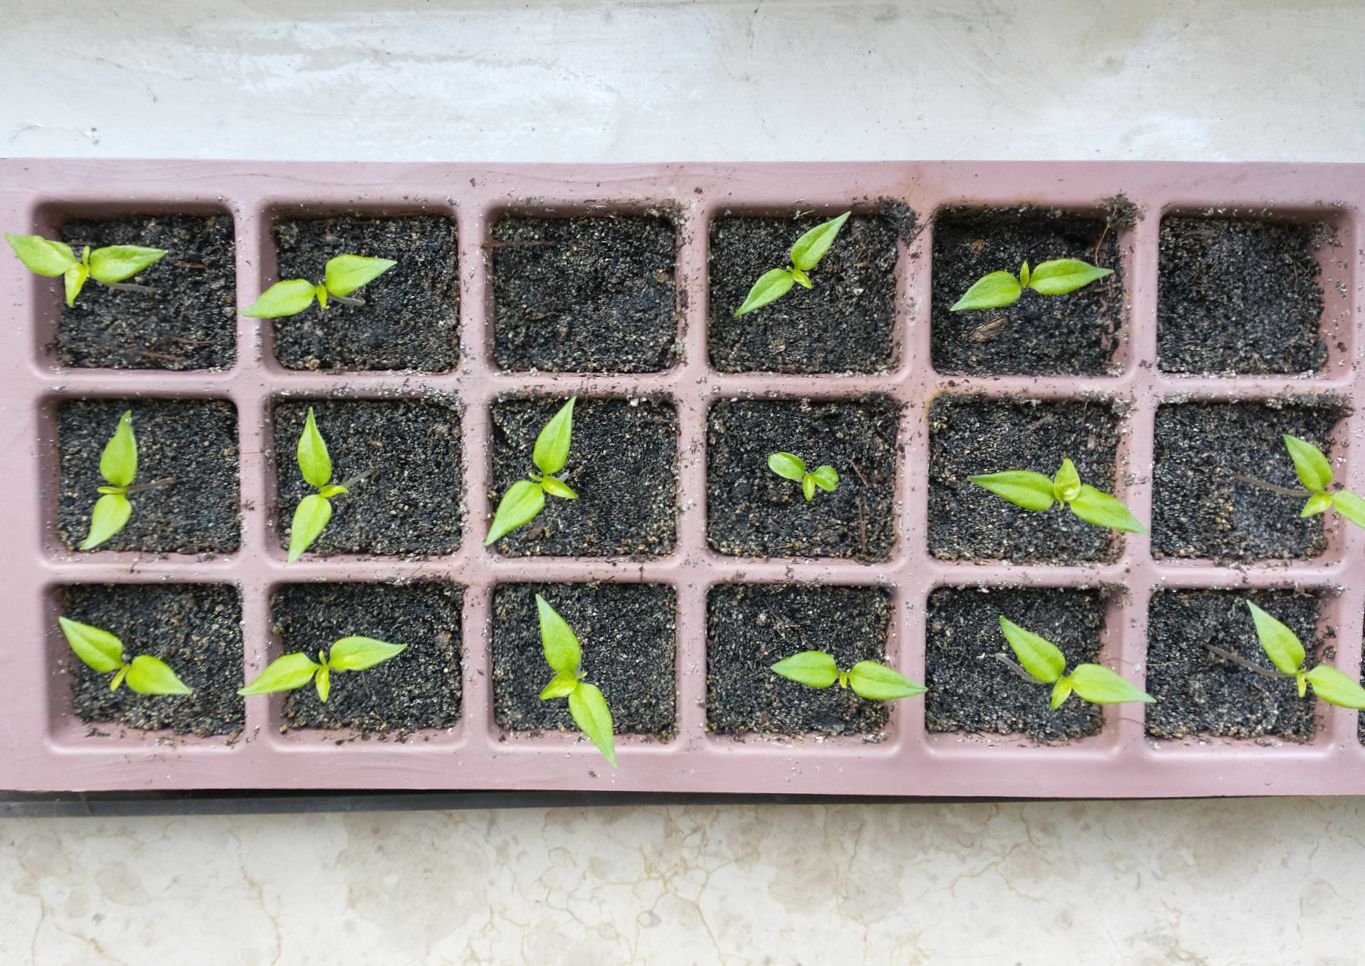 A tray of habanero seedlings.